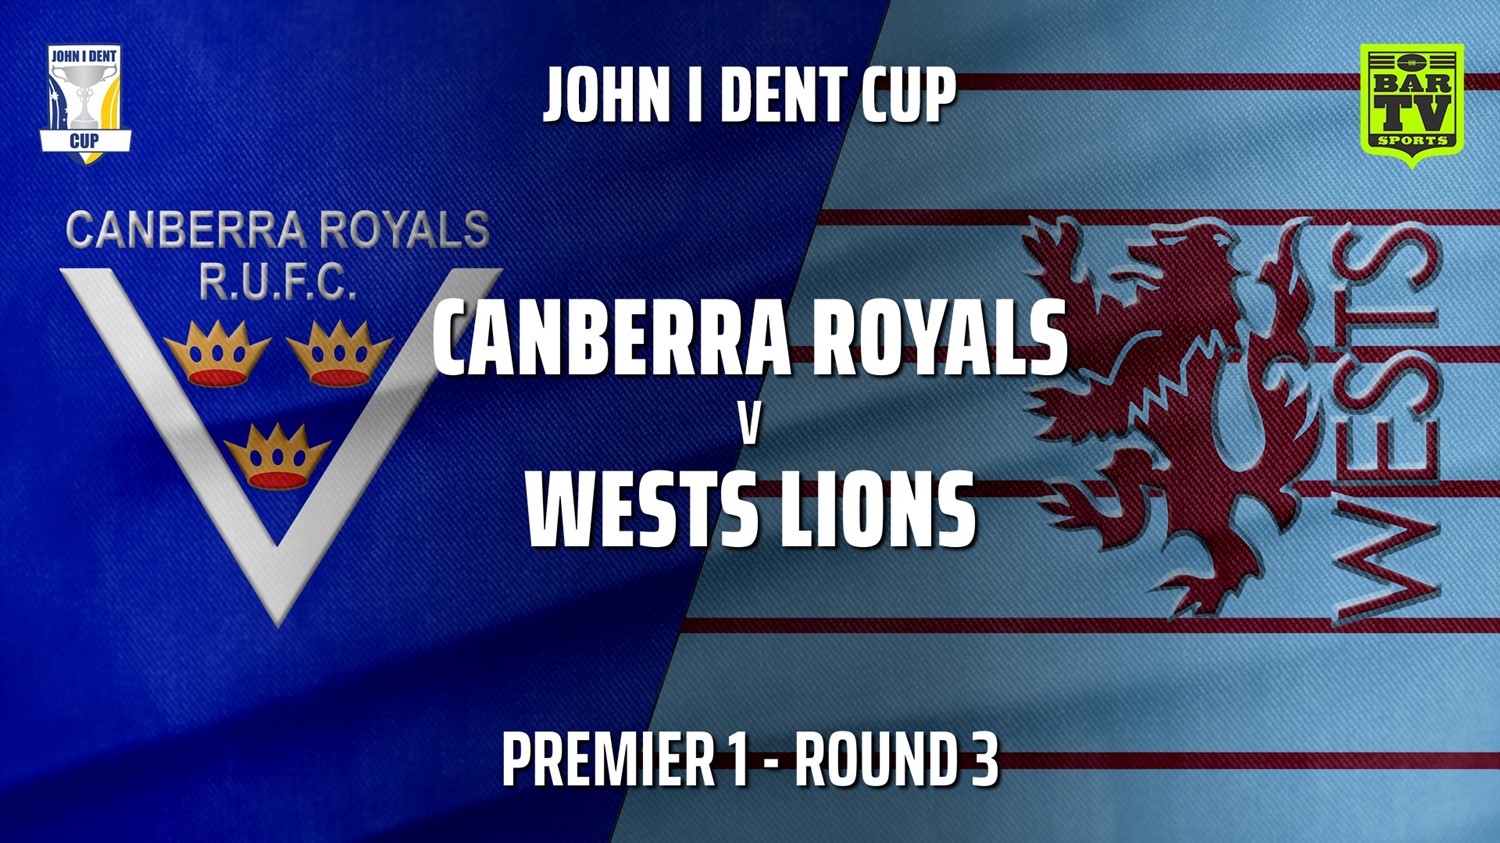 210501-John I Dent Round 3 - Premier 1 - Canberra Royals v Wests Lions Slate Image